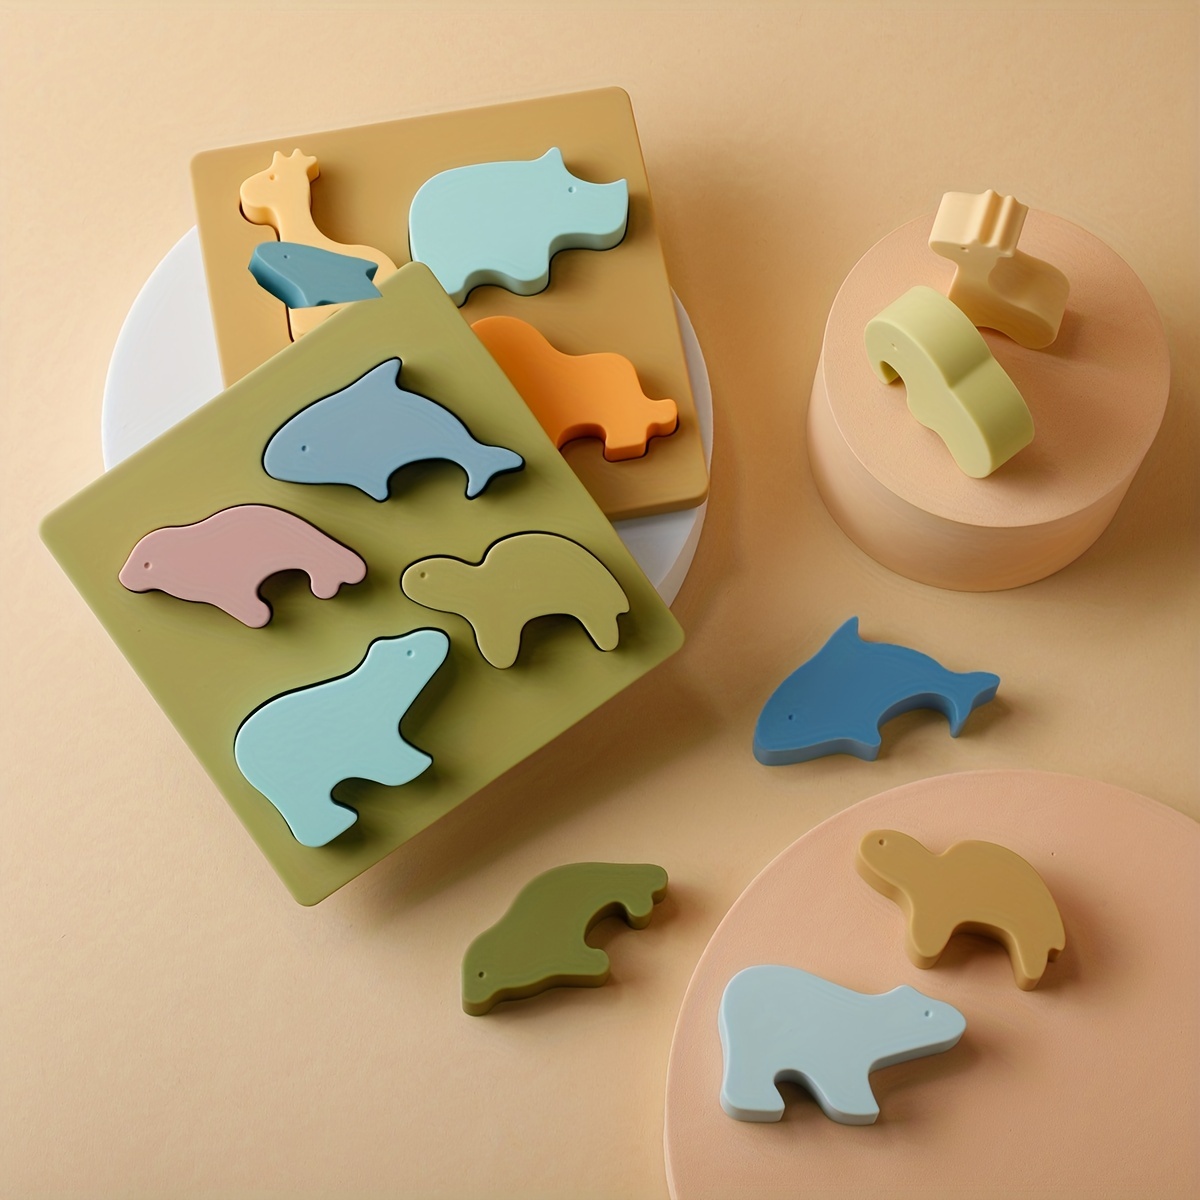 Puzzle en bois pour tout-petits de 2 à 3 ans Ensemble de 3 puzzles pour  tout-petits de 4 à 5 ans par QUOKKA Jeu de jouets animaux réalistes  Montessori pour enfants -  France